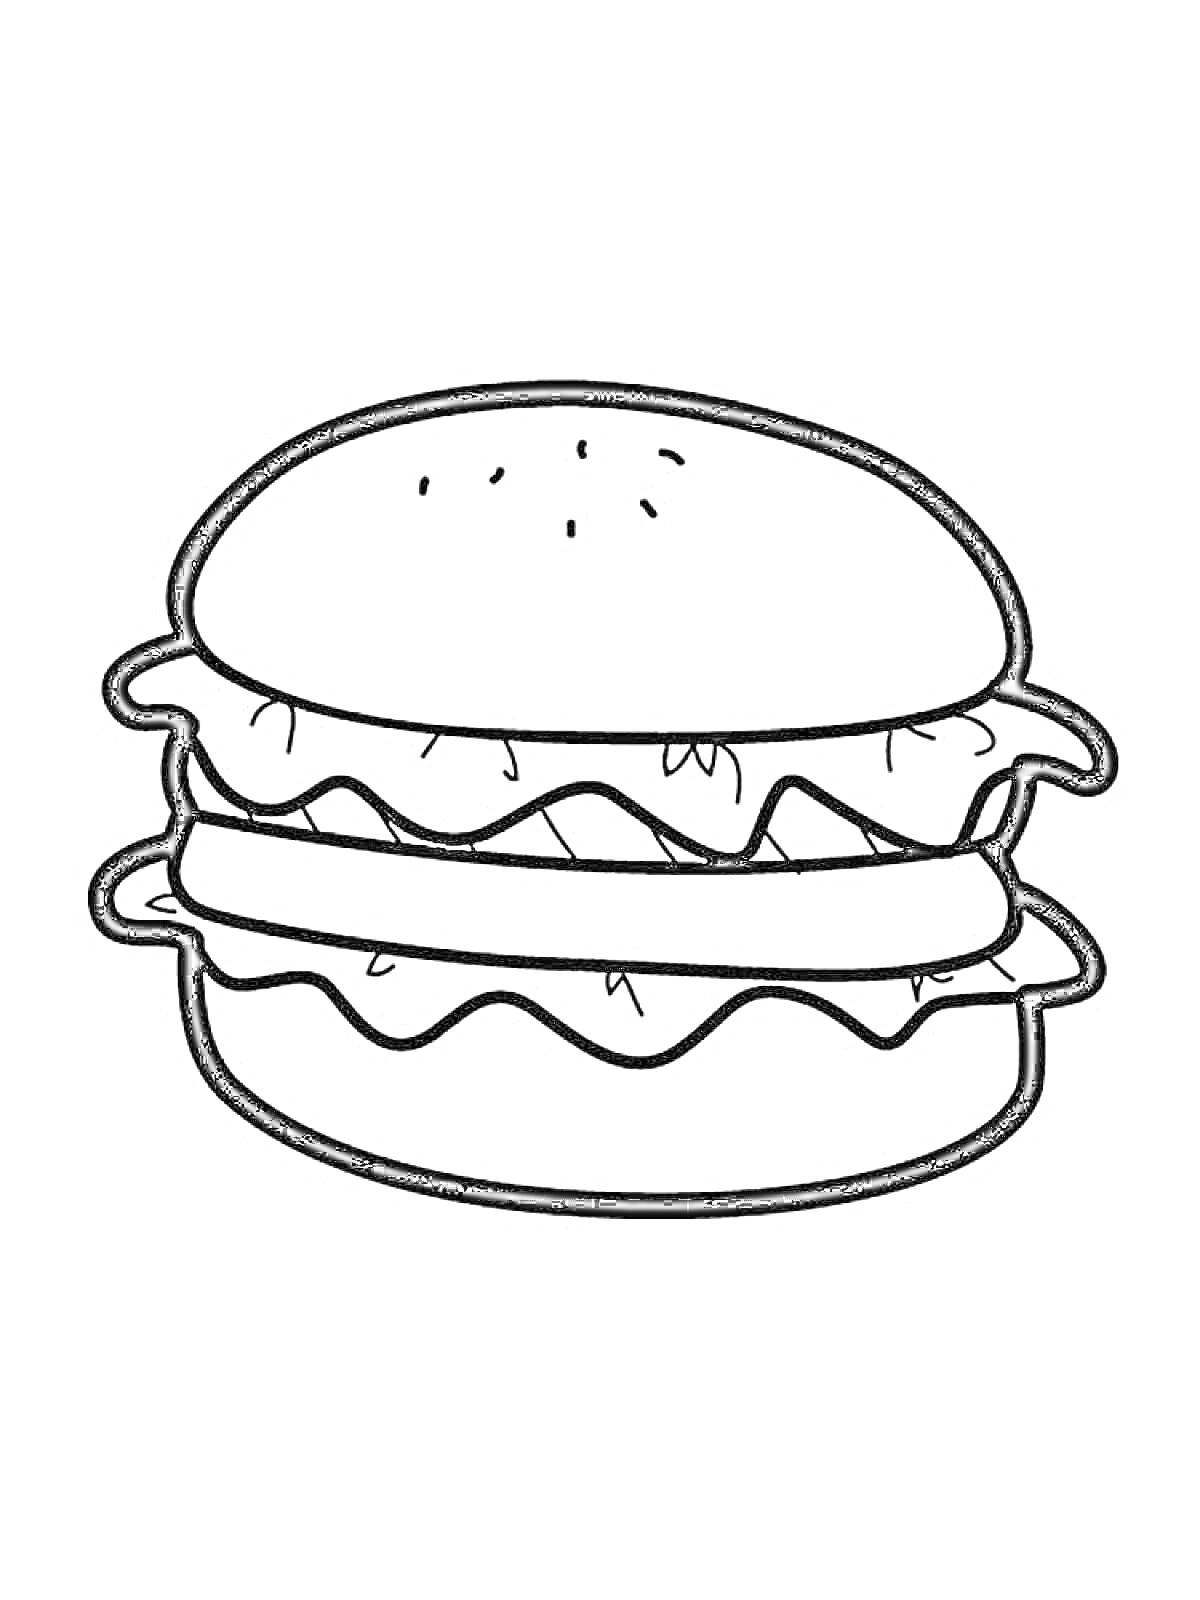 бургер с булочкой, салатом и двумя слоями котлет